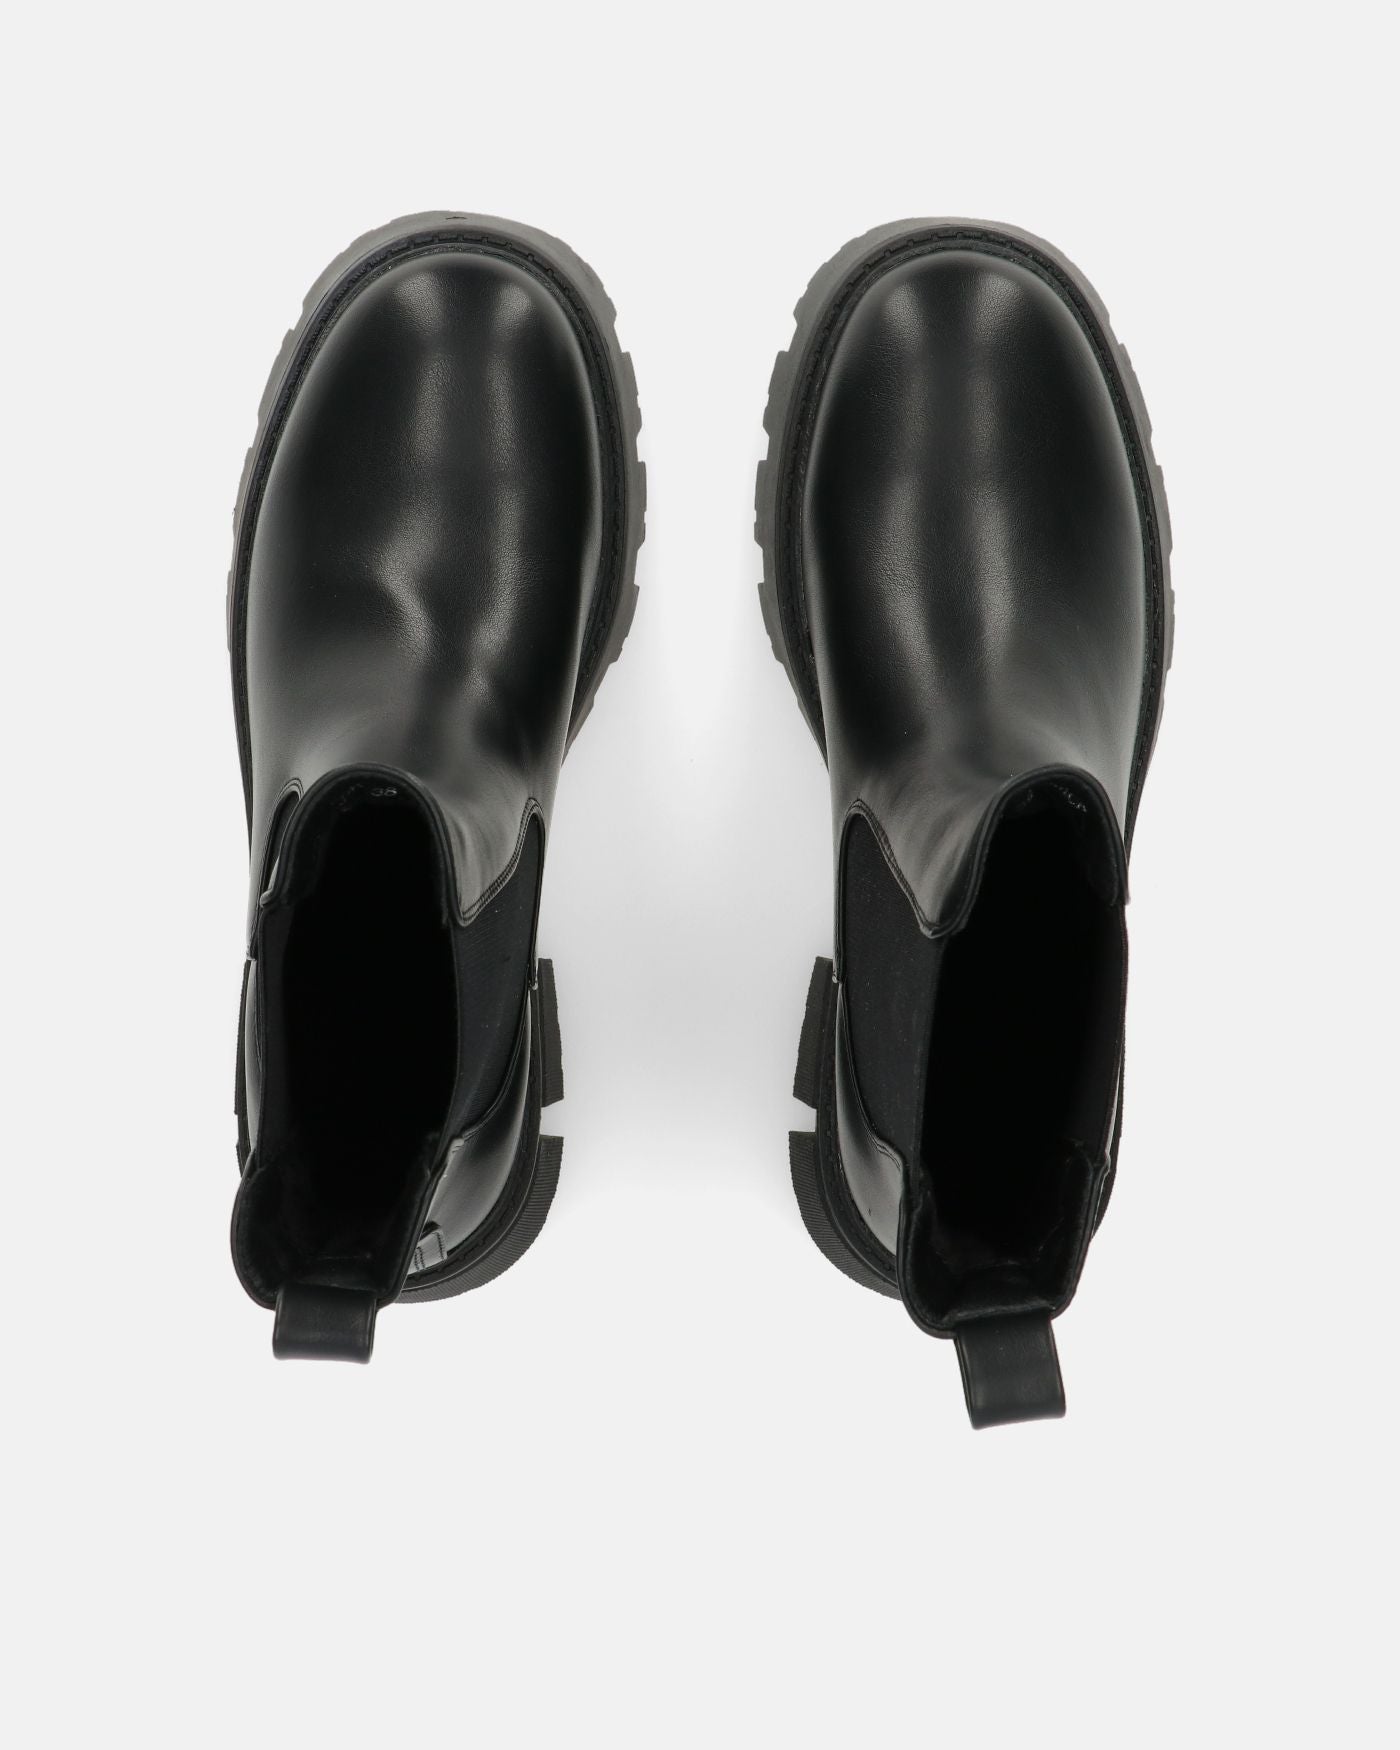 ALLEGRA - botines negros con tejido elástico